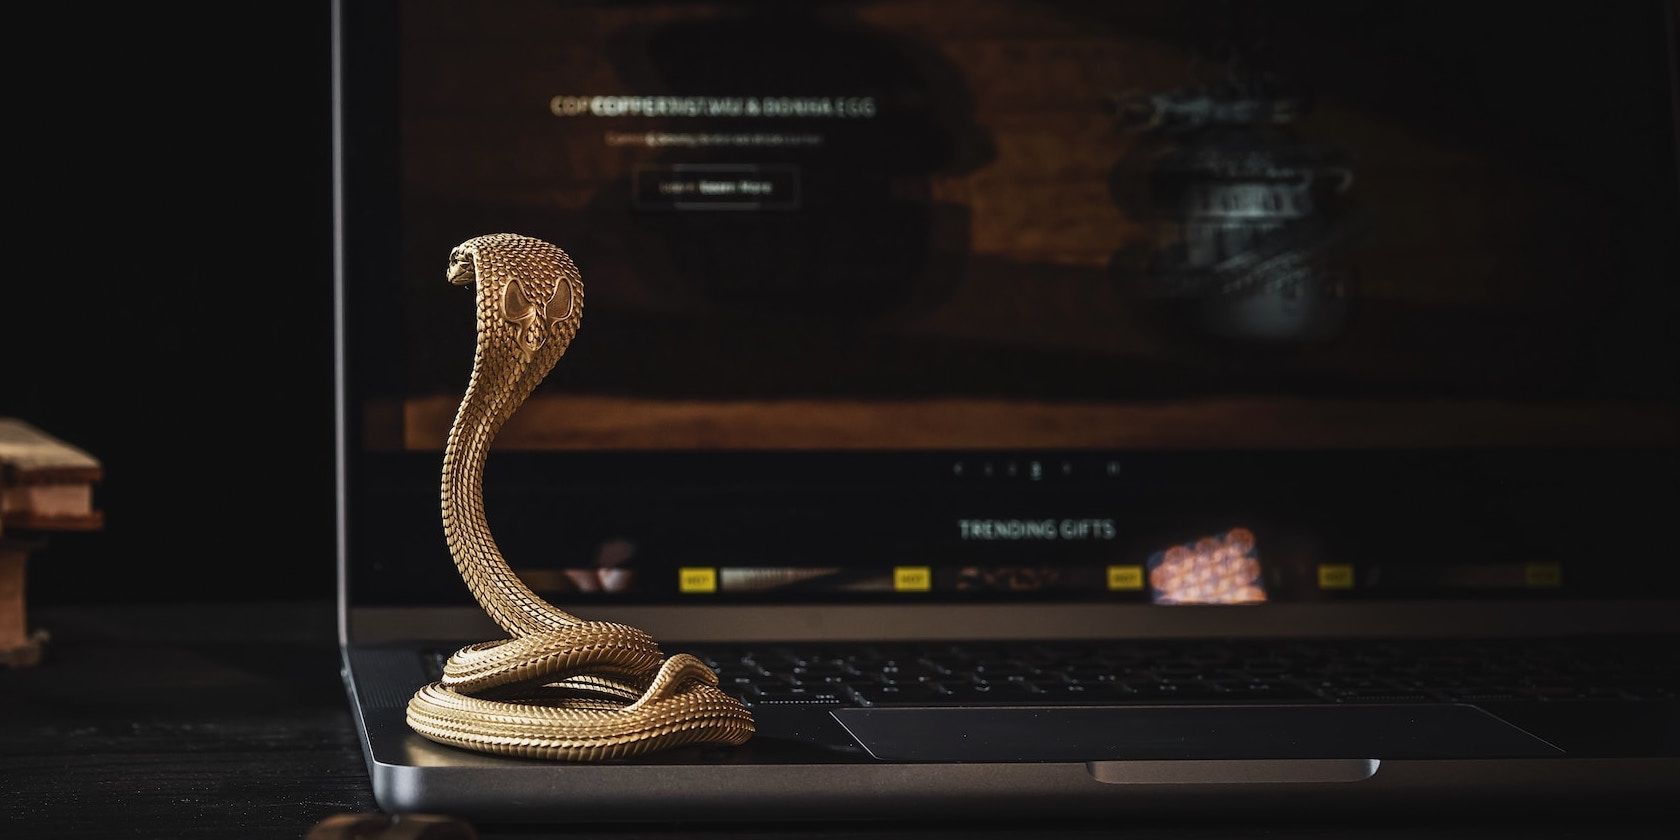 Snake on a laptop